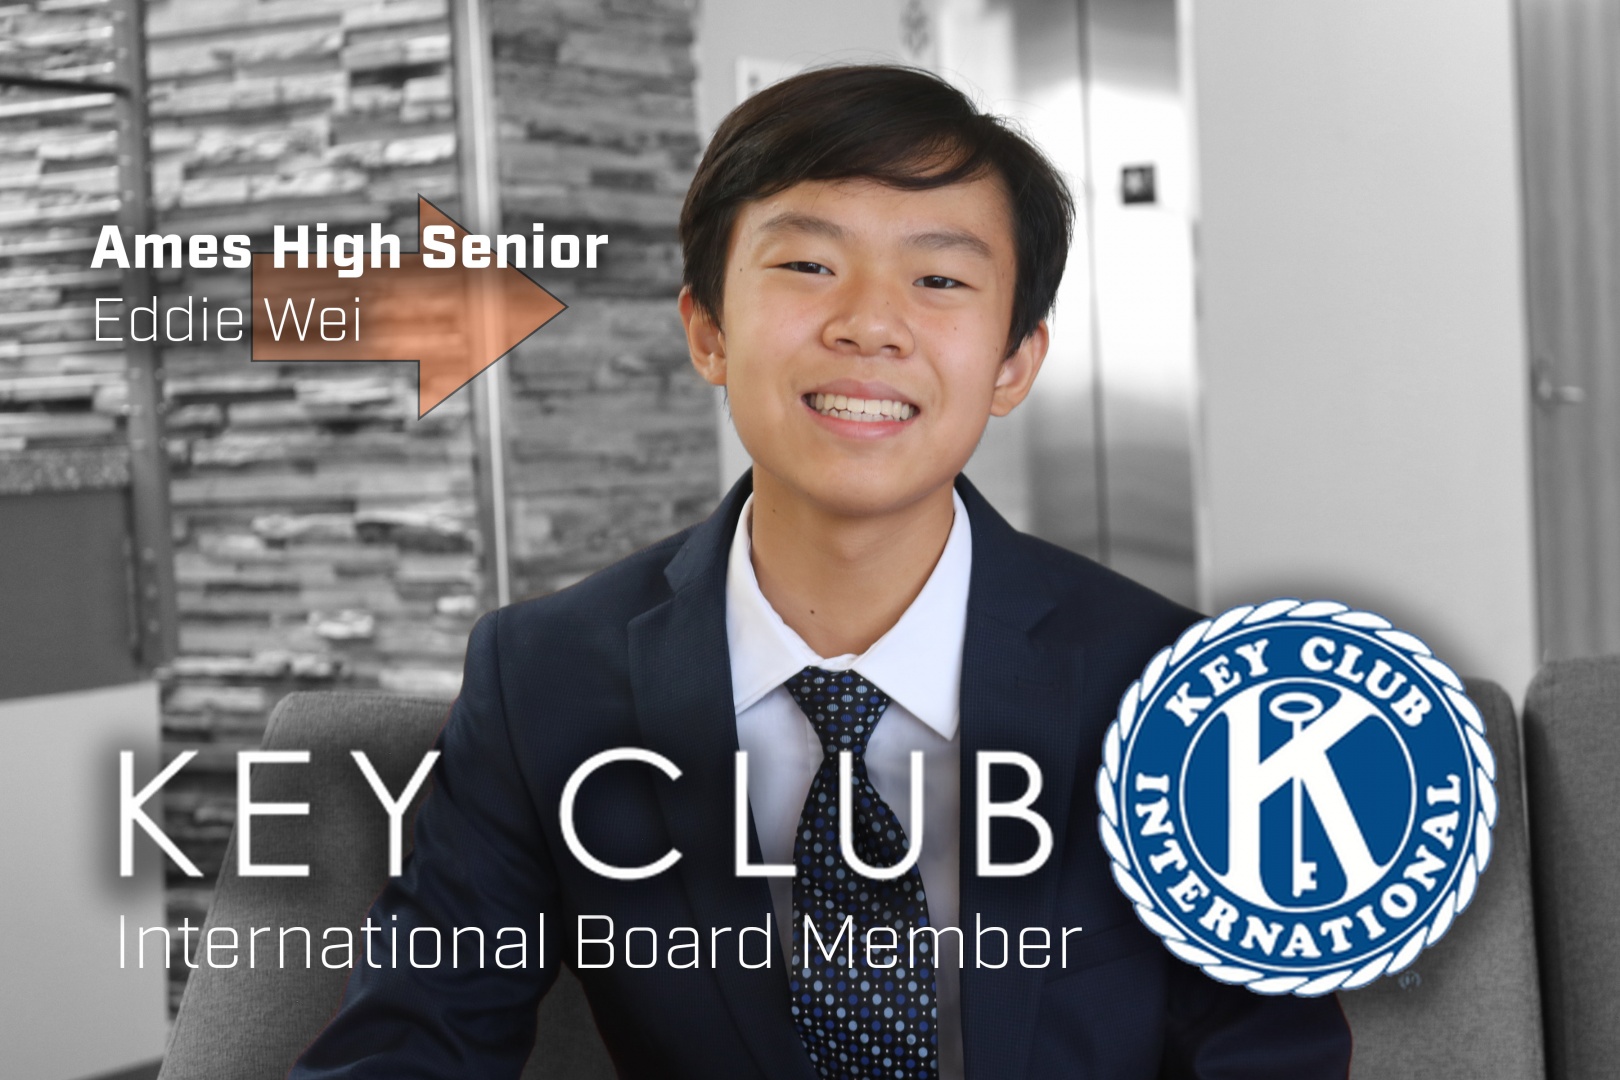 Ames High Senior Eddie Wei Elected to the Key Club International Board